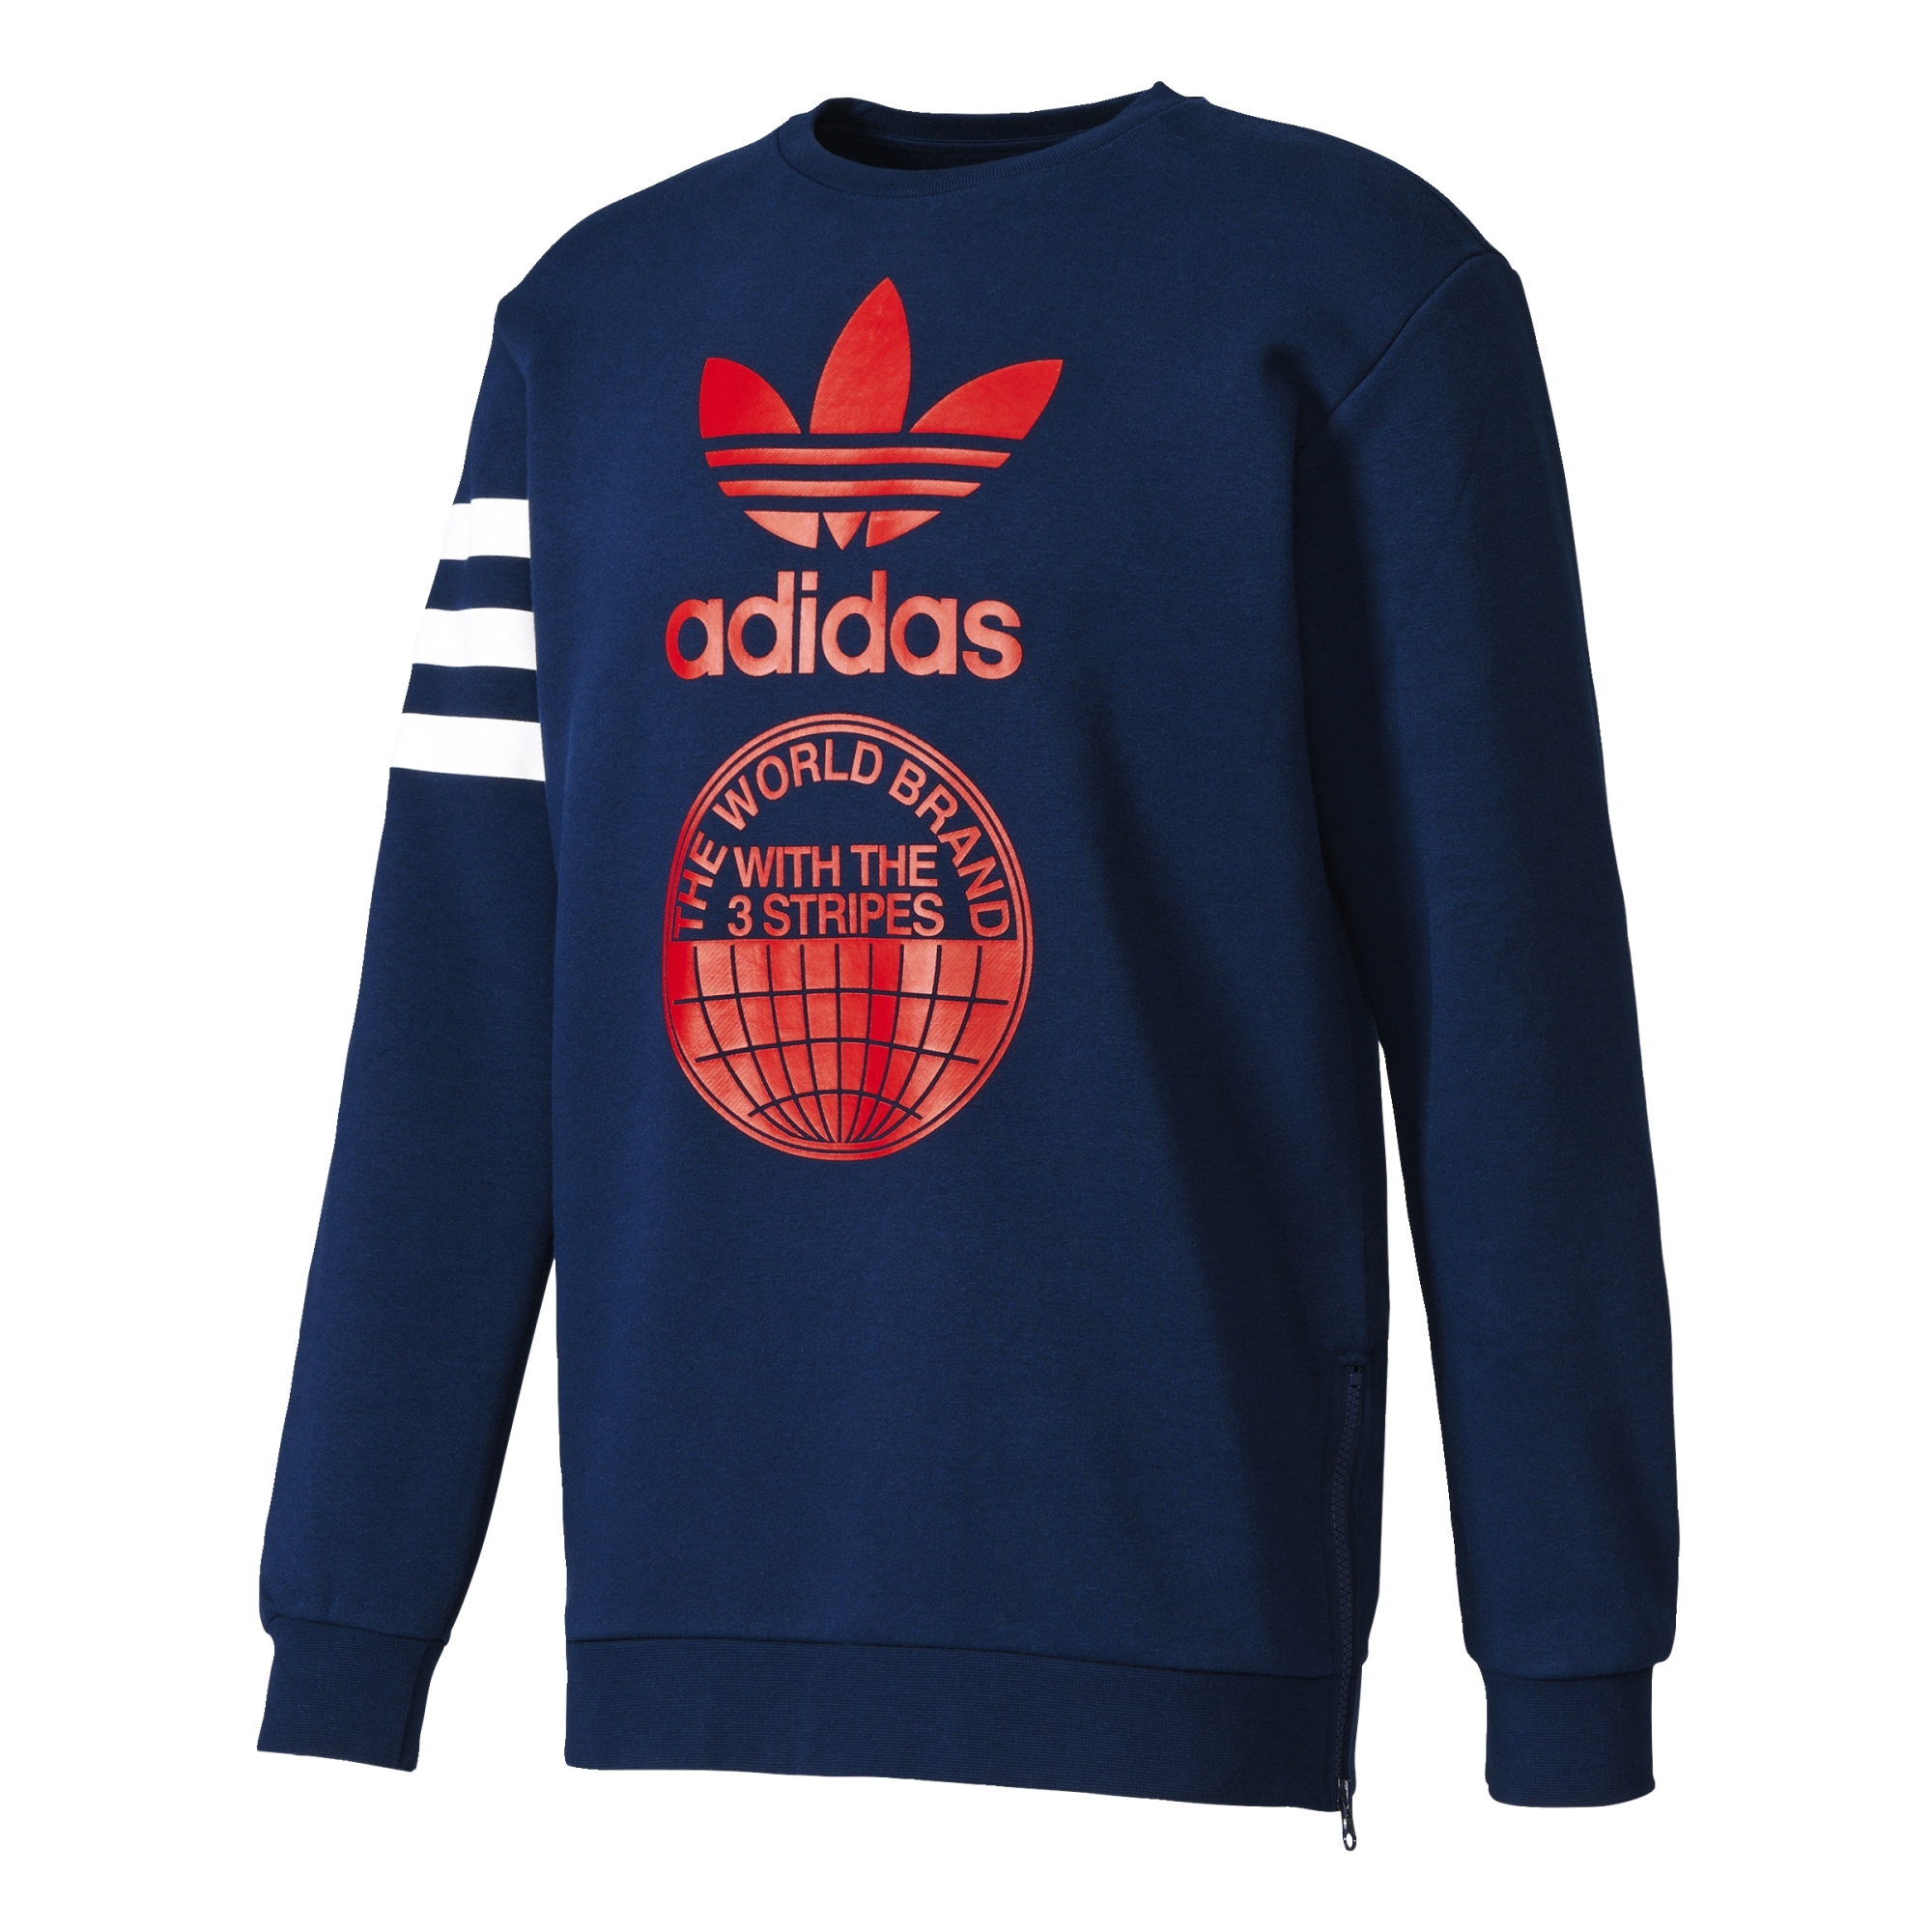 Debería Agnes Gray peor Adidas Originals Street Graphic Crew Sweatshirt (collegiate navy